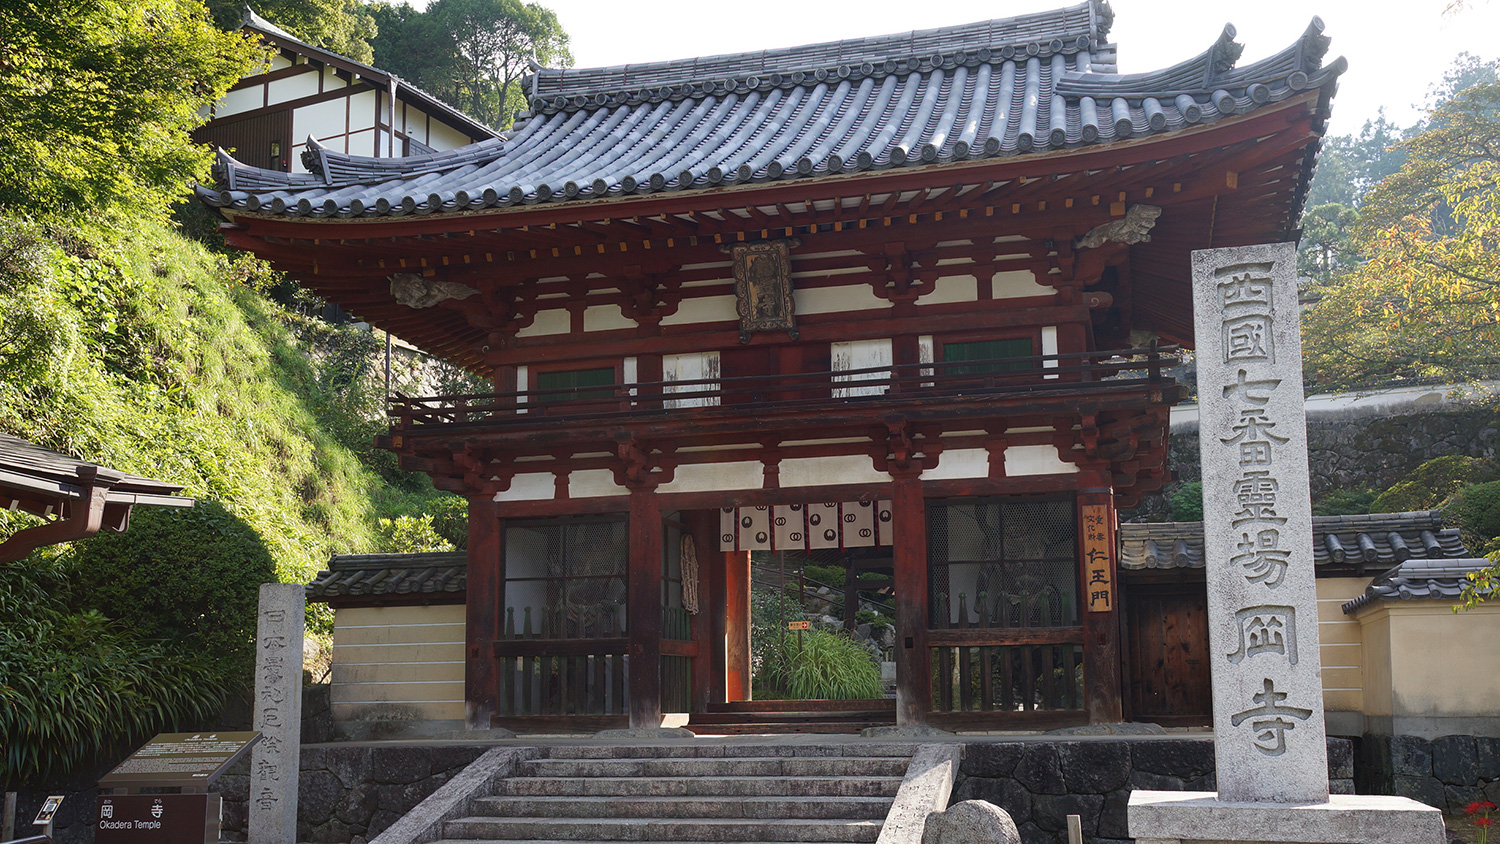 Niō-mon or Nio Gate